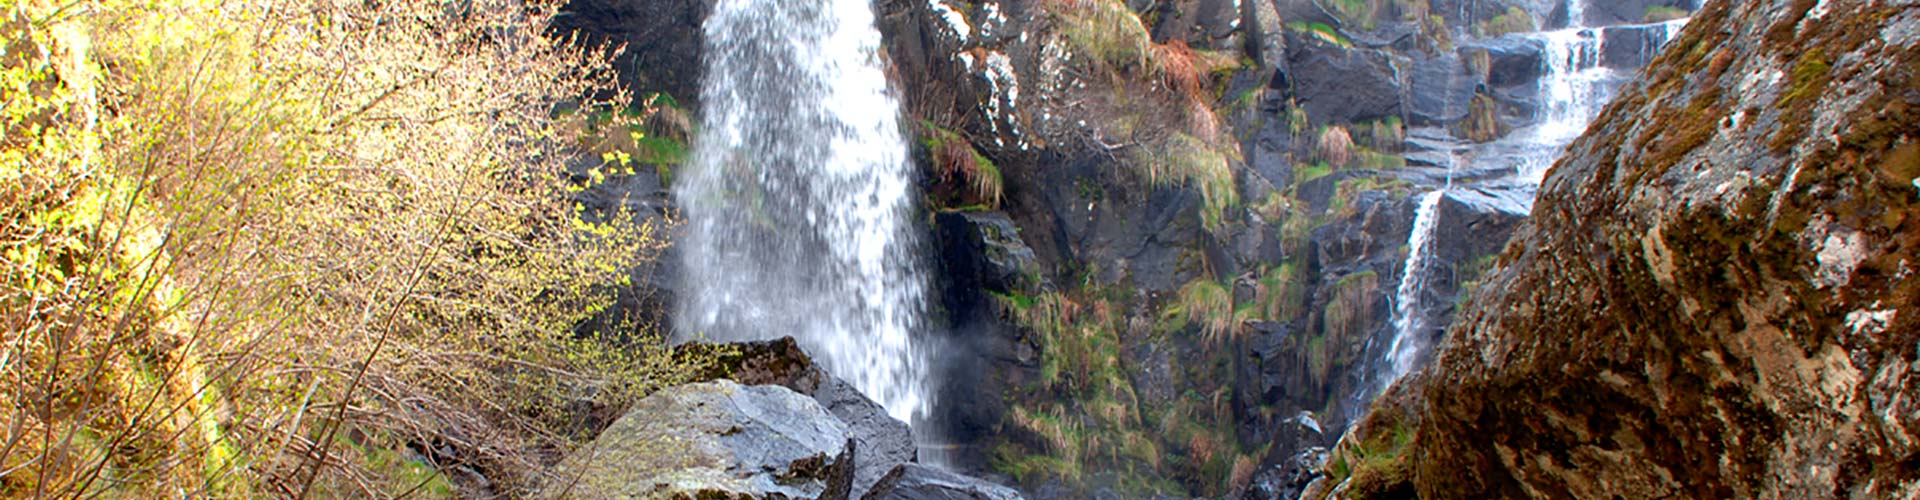 Puebla de Sanabria y las cascadas de Sotillo